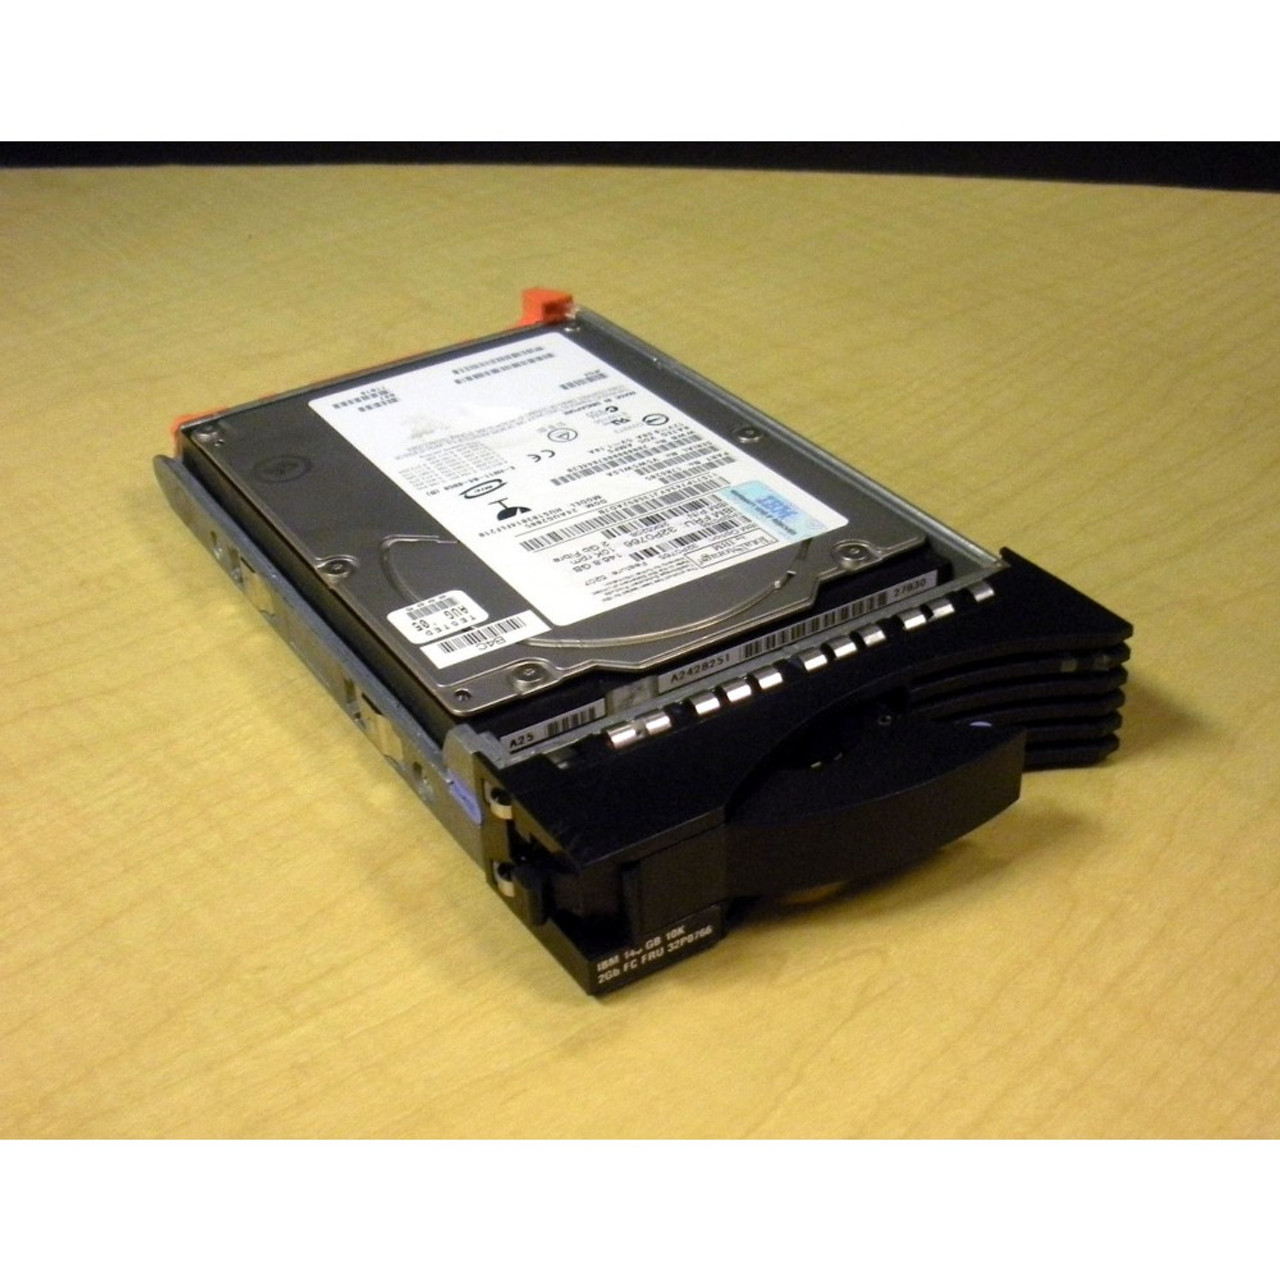 国産再入荷 ThinkPad USB3.0 500GB セキュア ハードドライブ レノボ 0A65619 リコメン堂 通販 PayPayモール 